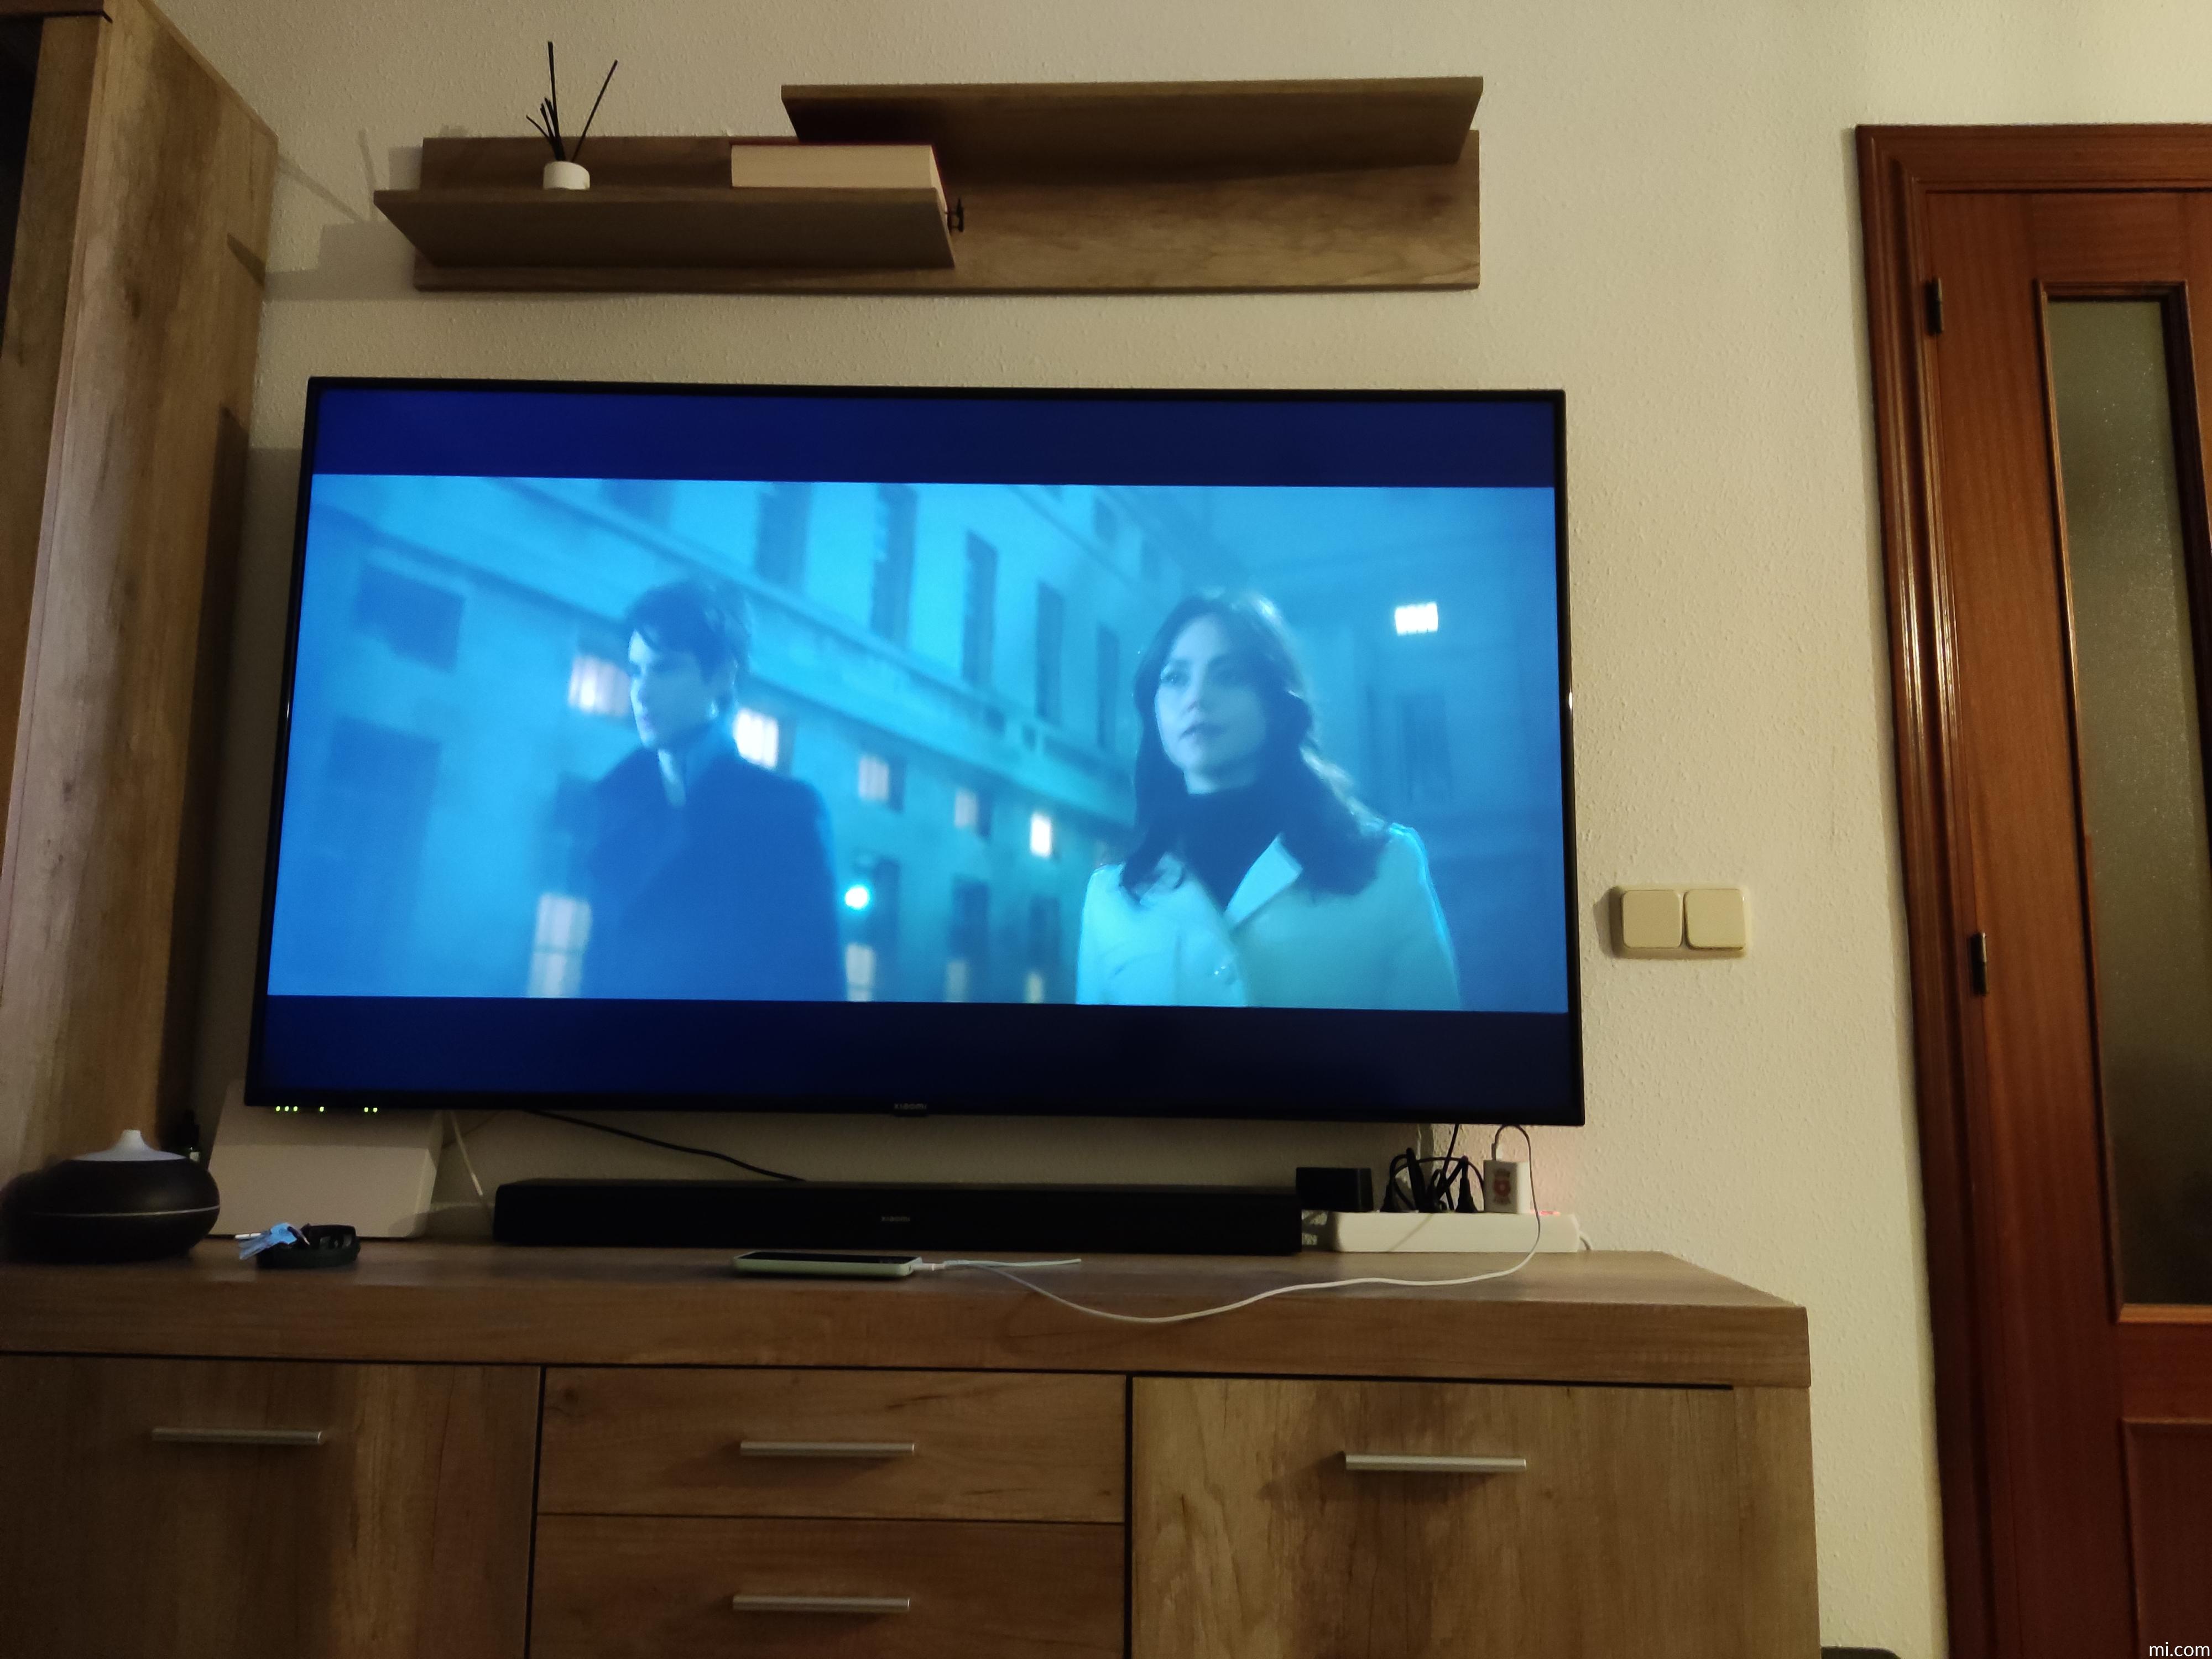 Celebra el Día del Soltero con este televisor Xiaomi de 65 pulgadas por  menos de 500